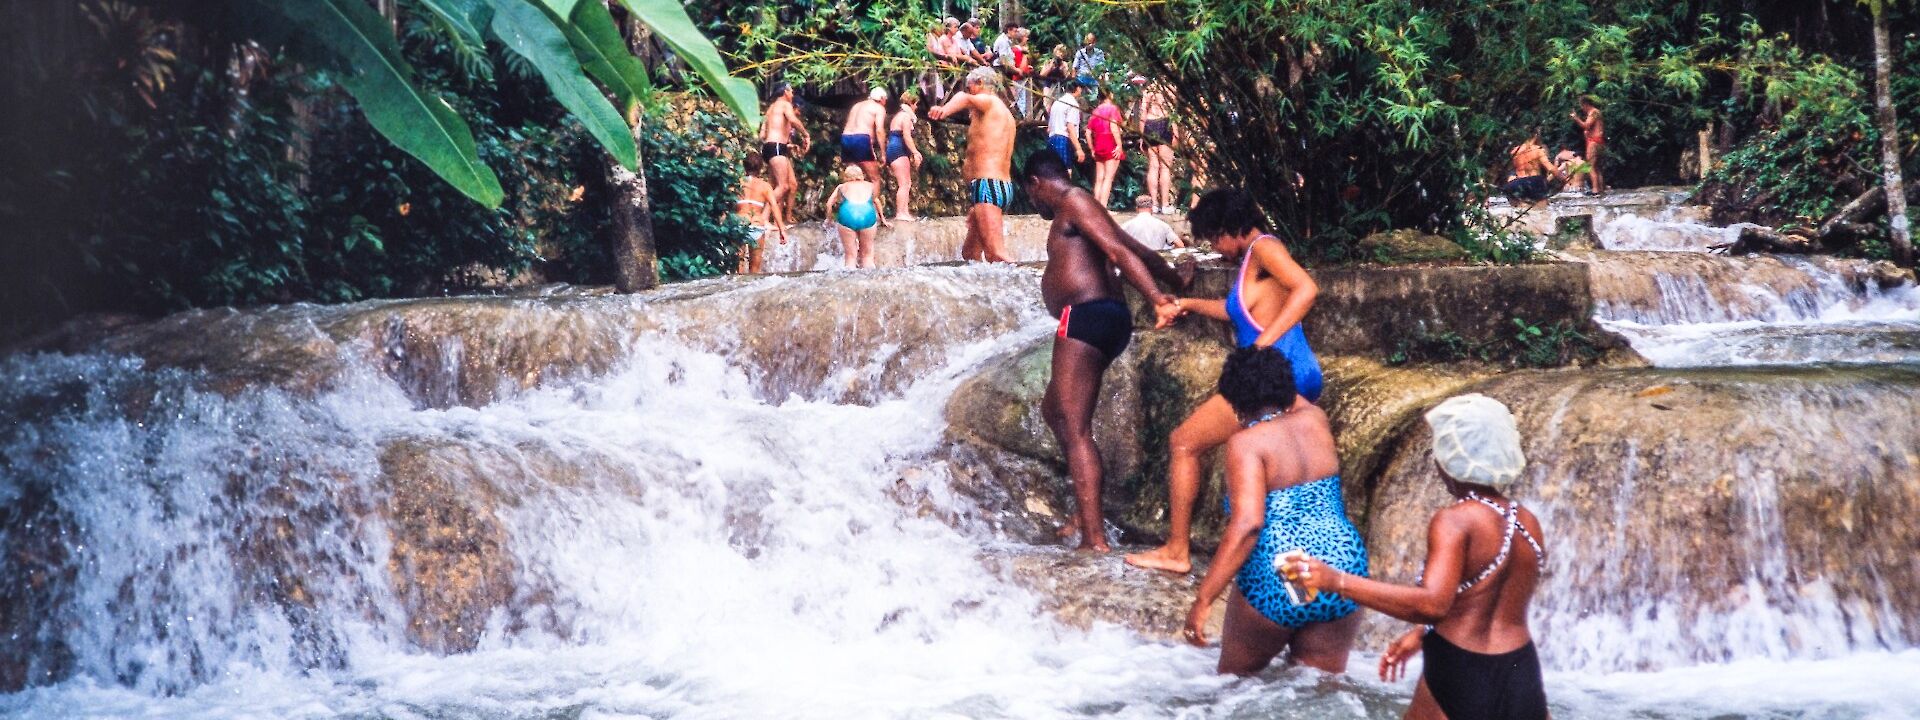 Dunns River Falls, Ocho Rios, Jamaica. Flickr: Alh1